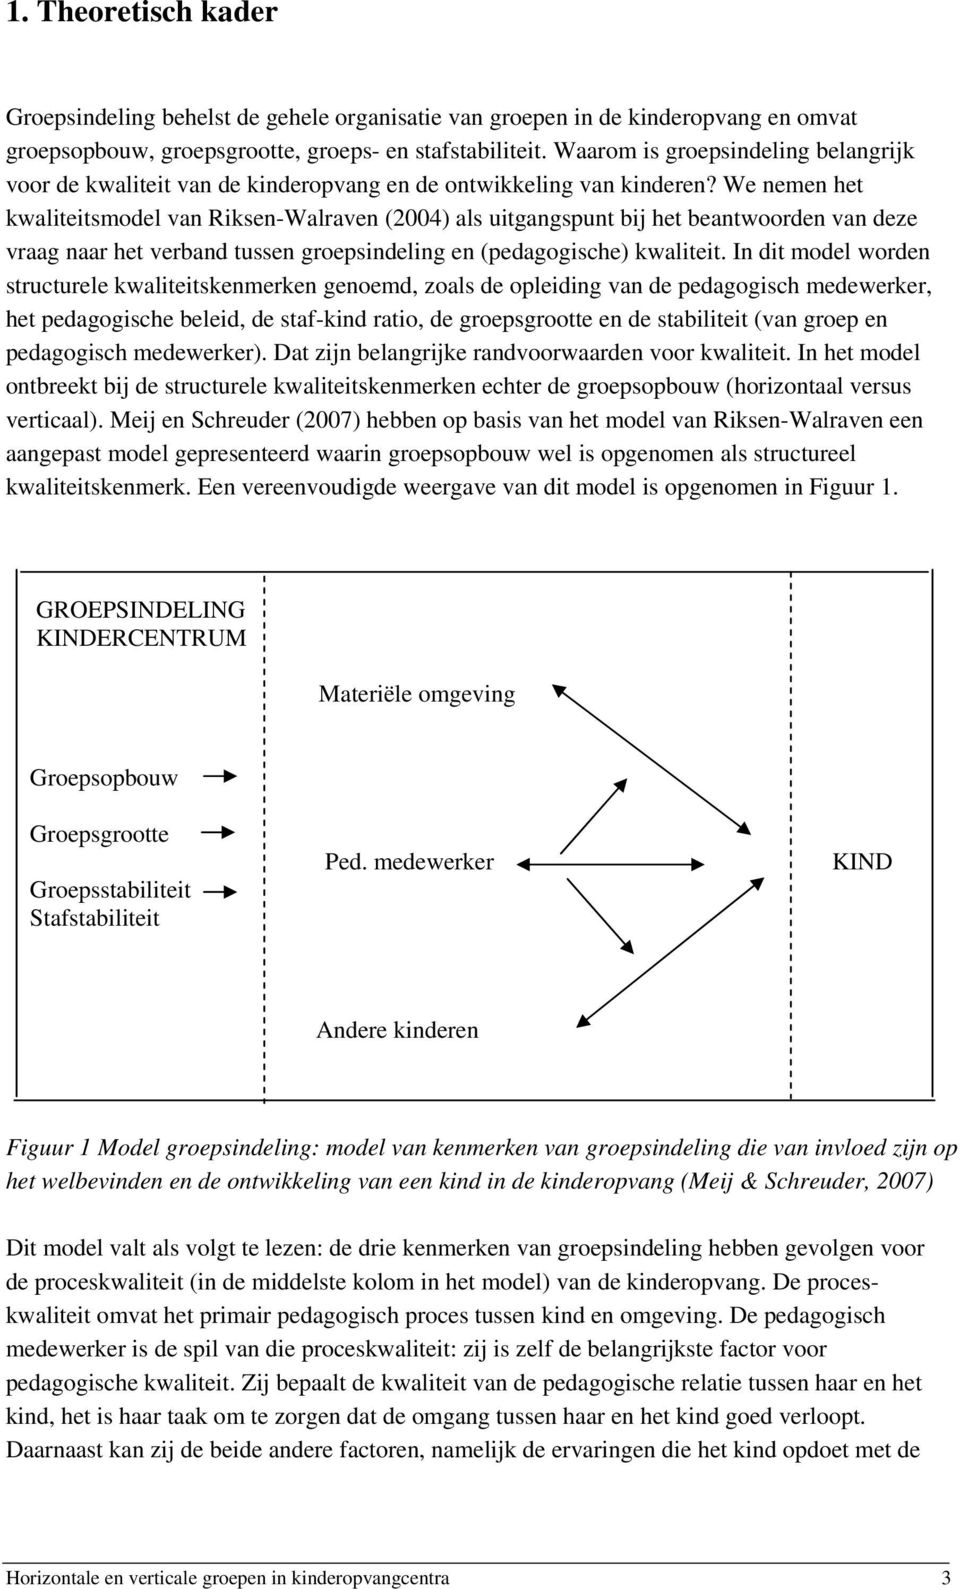 We nemen het kwaliteitsmodel van Riksen-Walraven (2004) als uitgangspunt bij het beantwoorden van deze vraag naar het verband tussen groepsindeling en (pedagogische) kwaliteit.